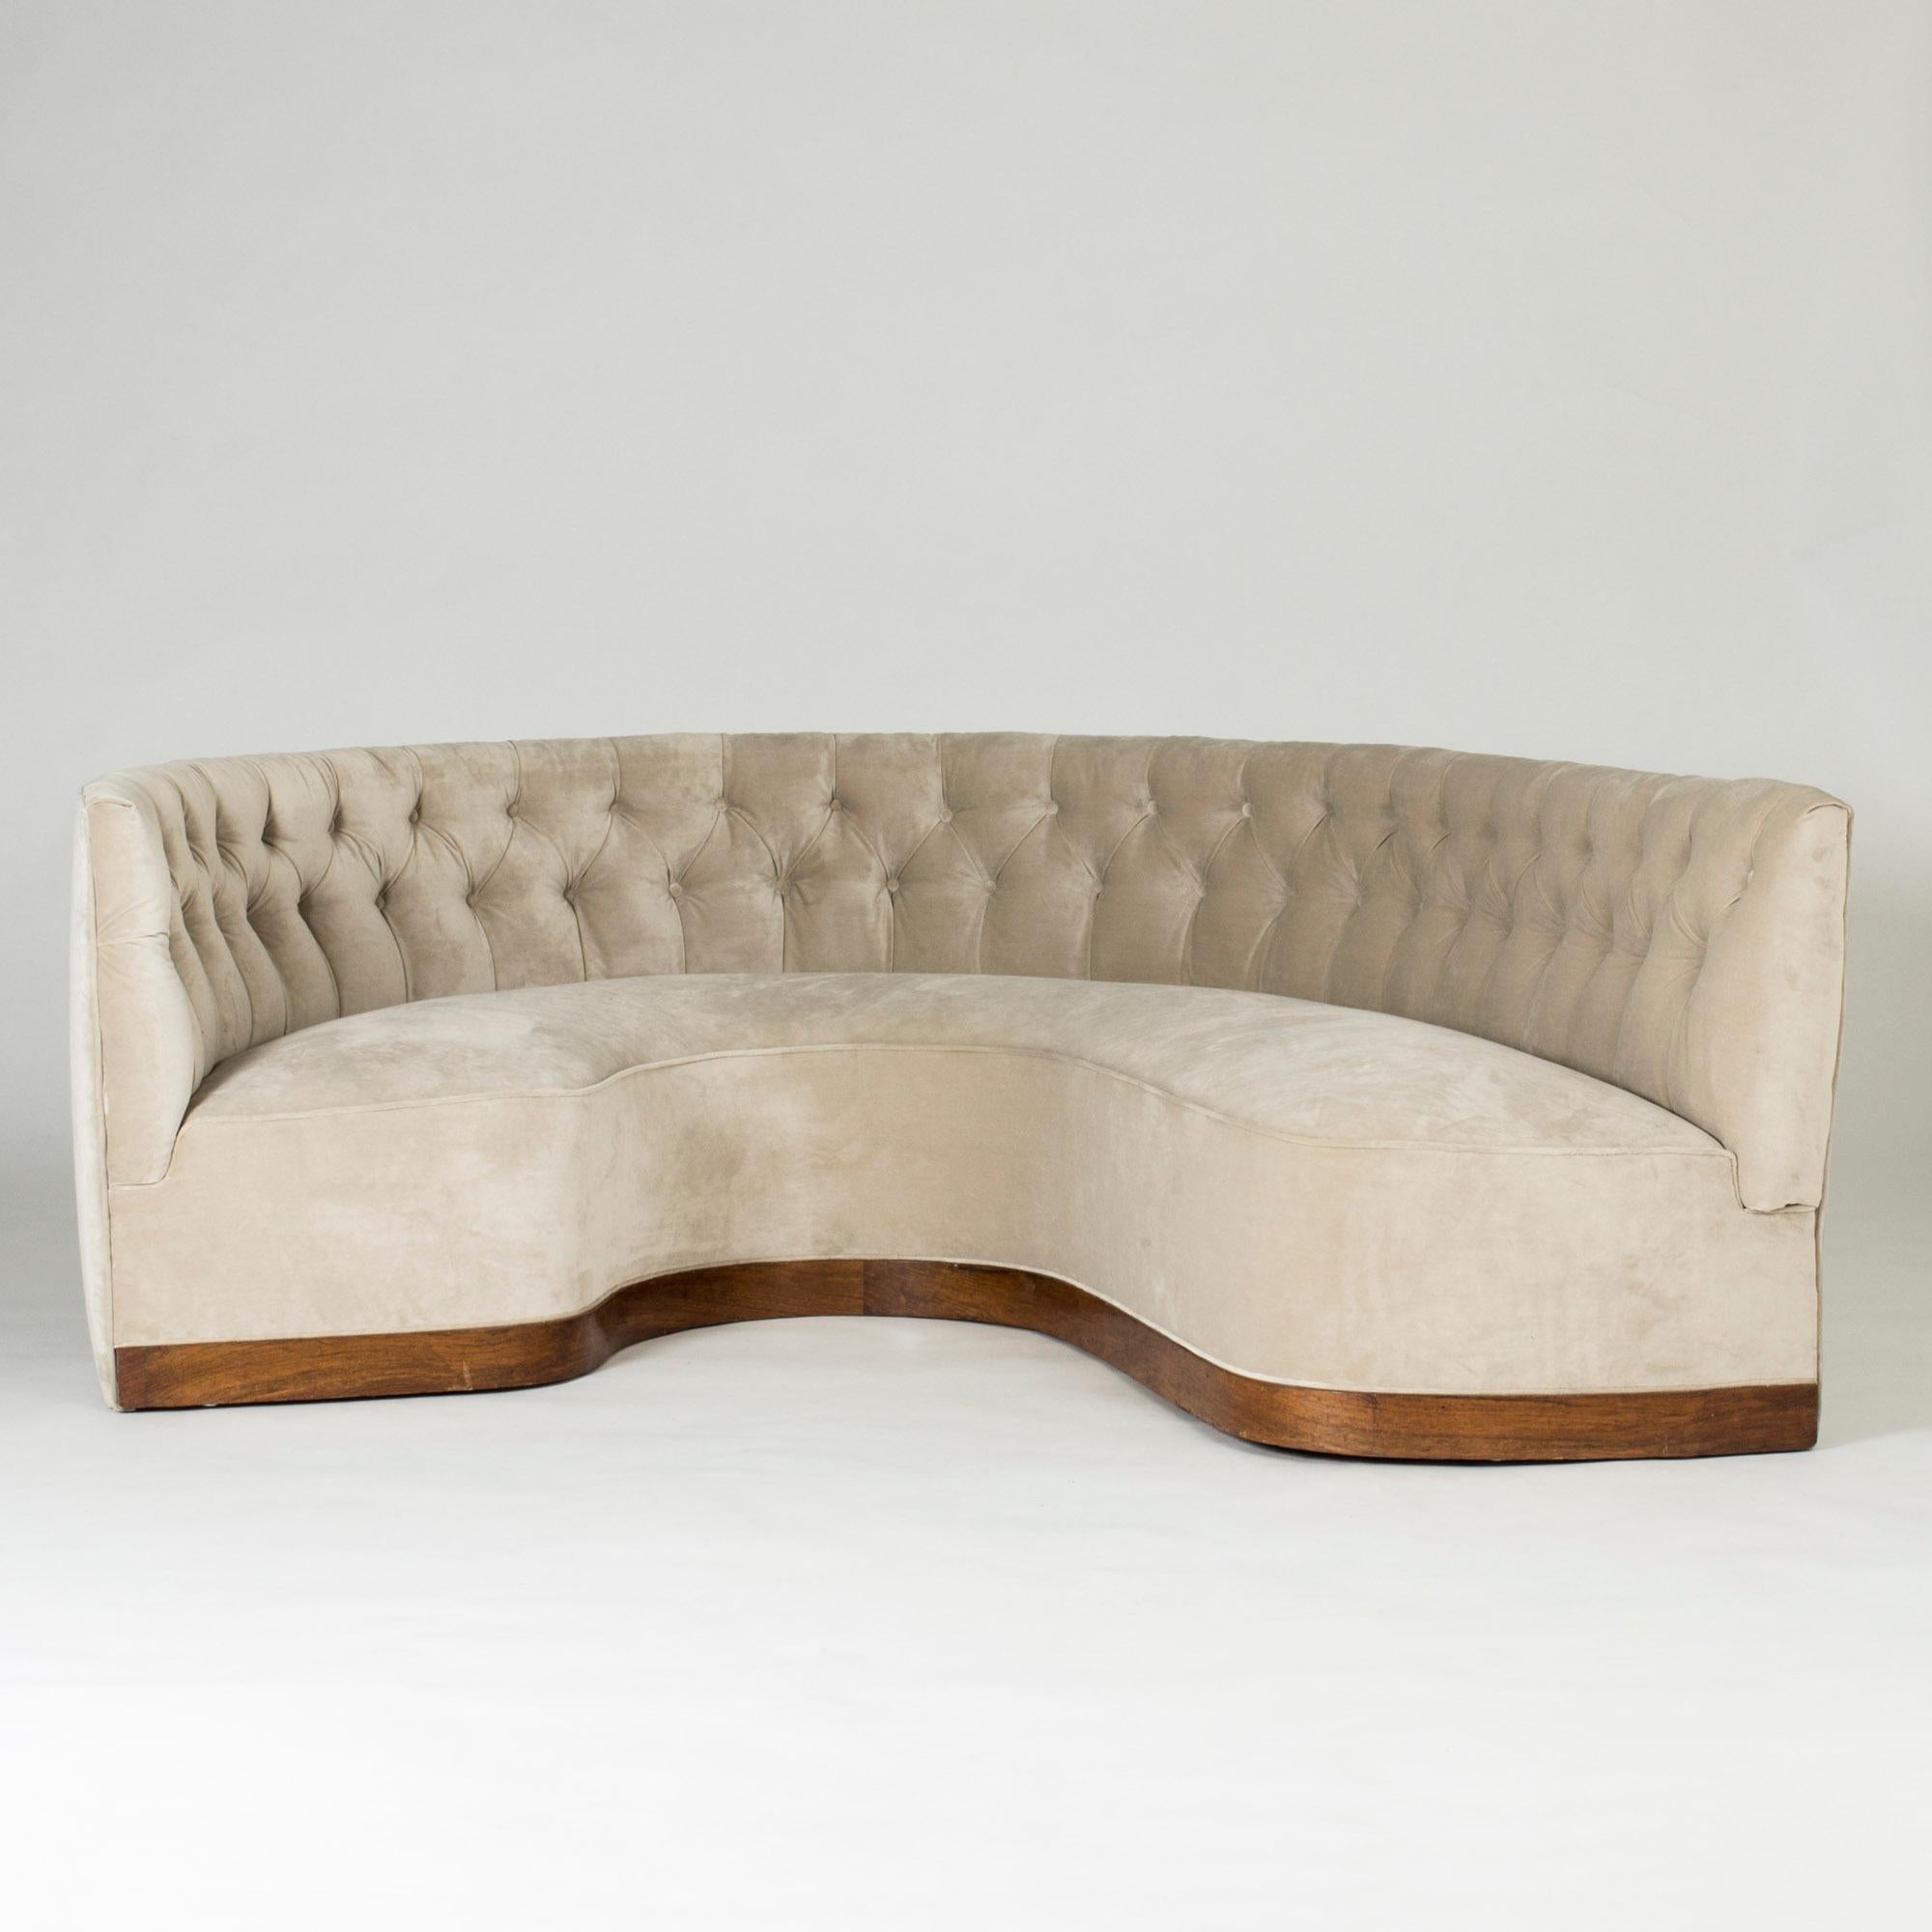 Élégant canapé suédois moderne surdimensionné, en forme de U, légèrement plus court à une extrémité. Le placage d'acajou entoure les côtés et l'intérieur. Tapissé d'un magnifique velours couleur coquille d'huître.
 